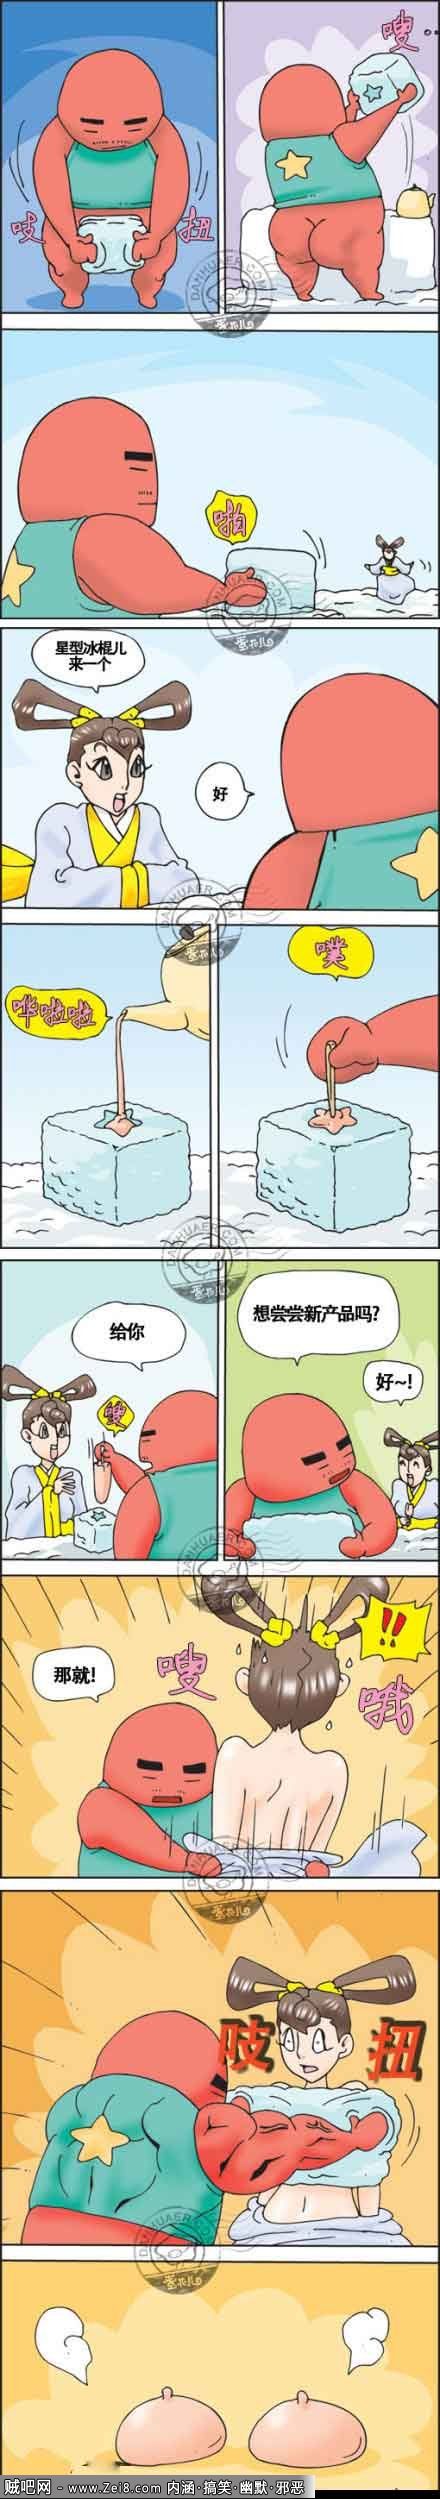 [邪恶漫画(吃冰棍系列)]：木瓜奶冰淇淋